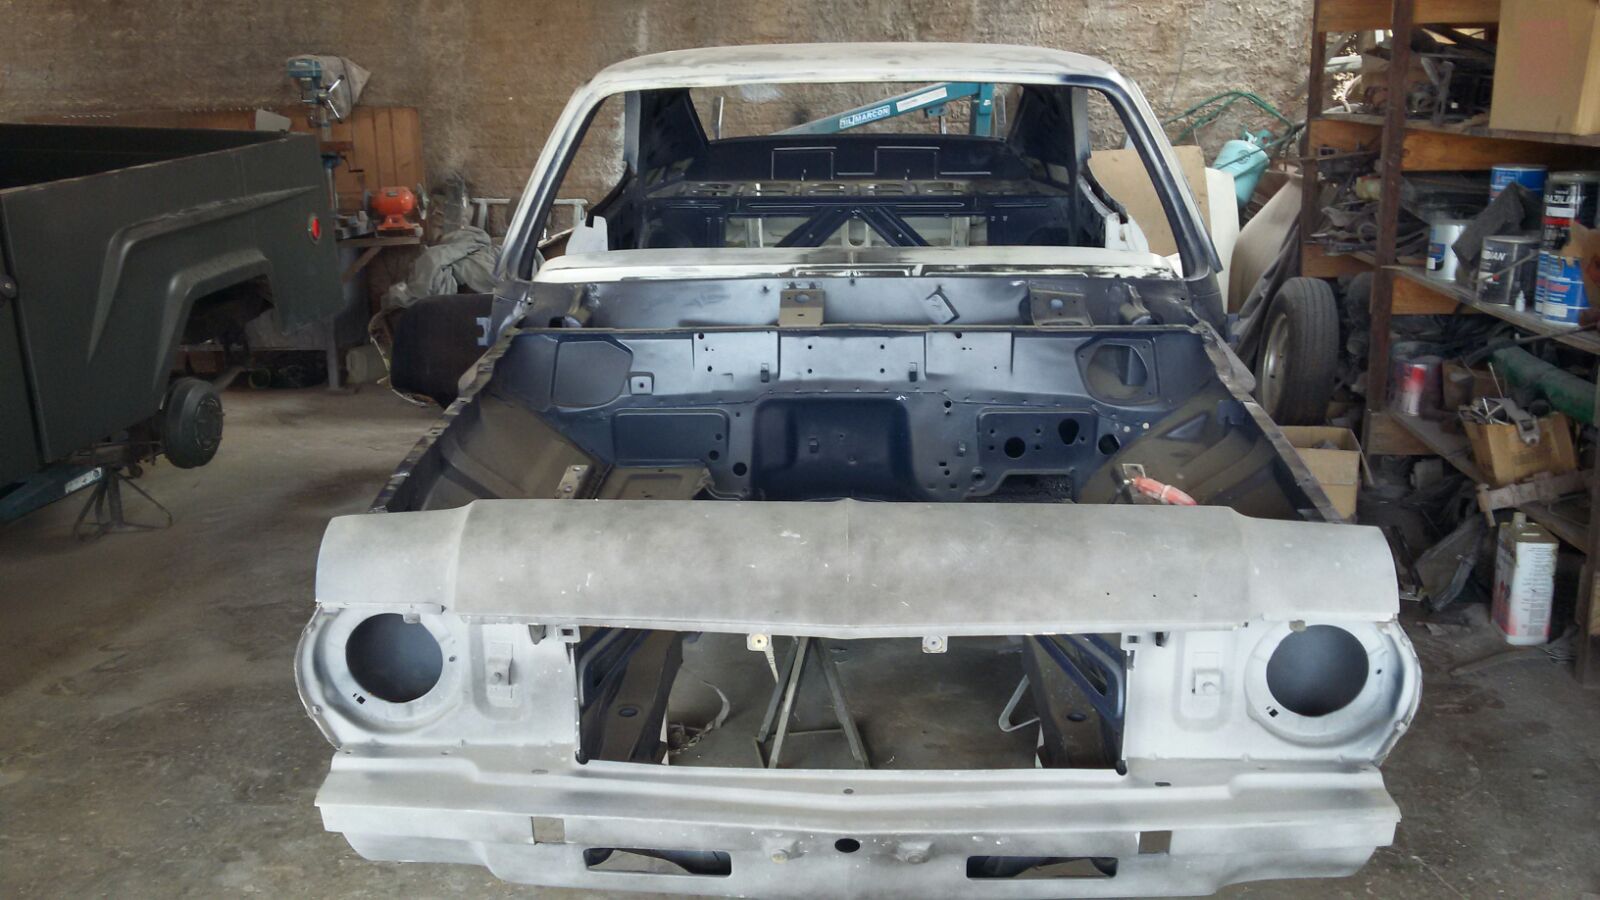  restauração opala coupé standard 1975  23184758440_49be5983d0_o